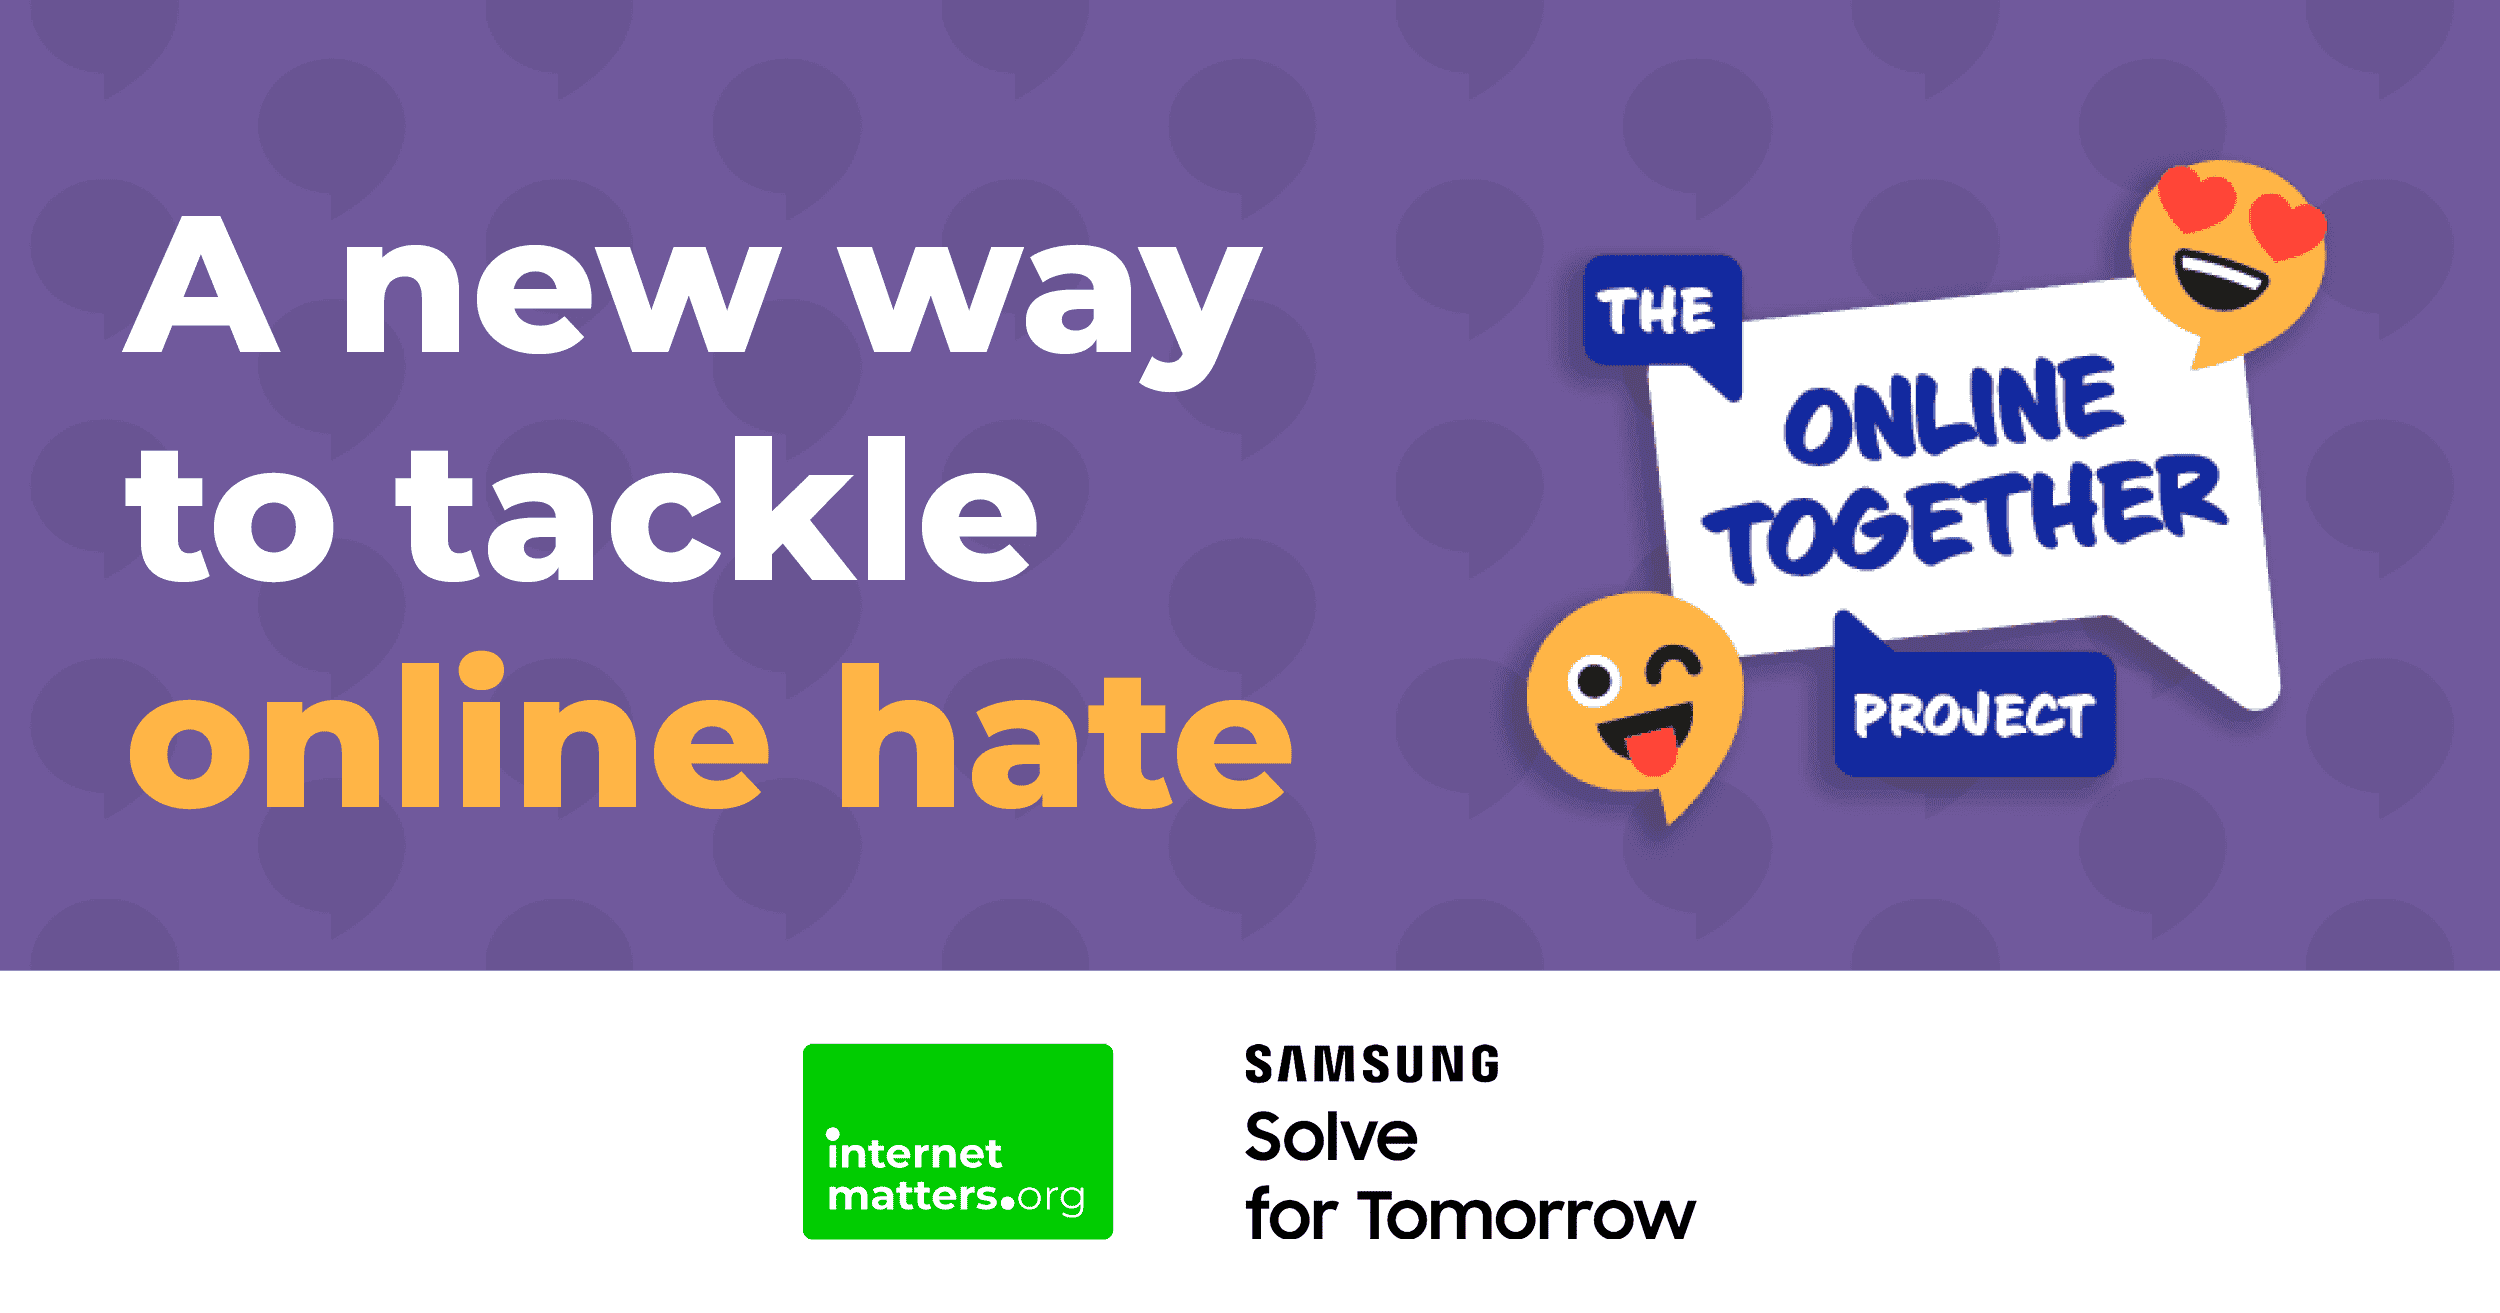 "Une nouvelle façon de lutter contre la haine en ligne" avec le logo du projet The Online Together.